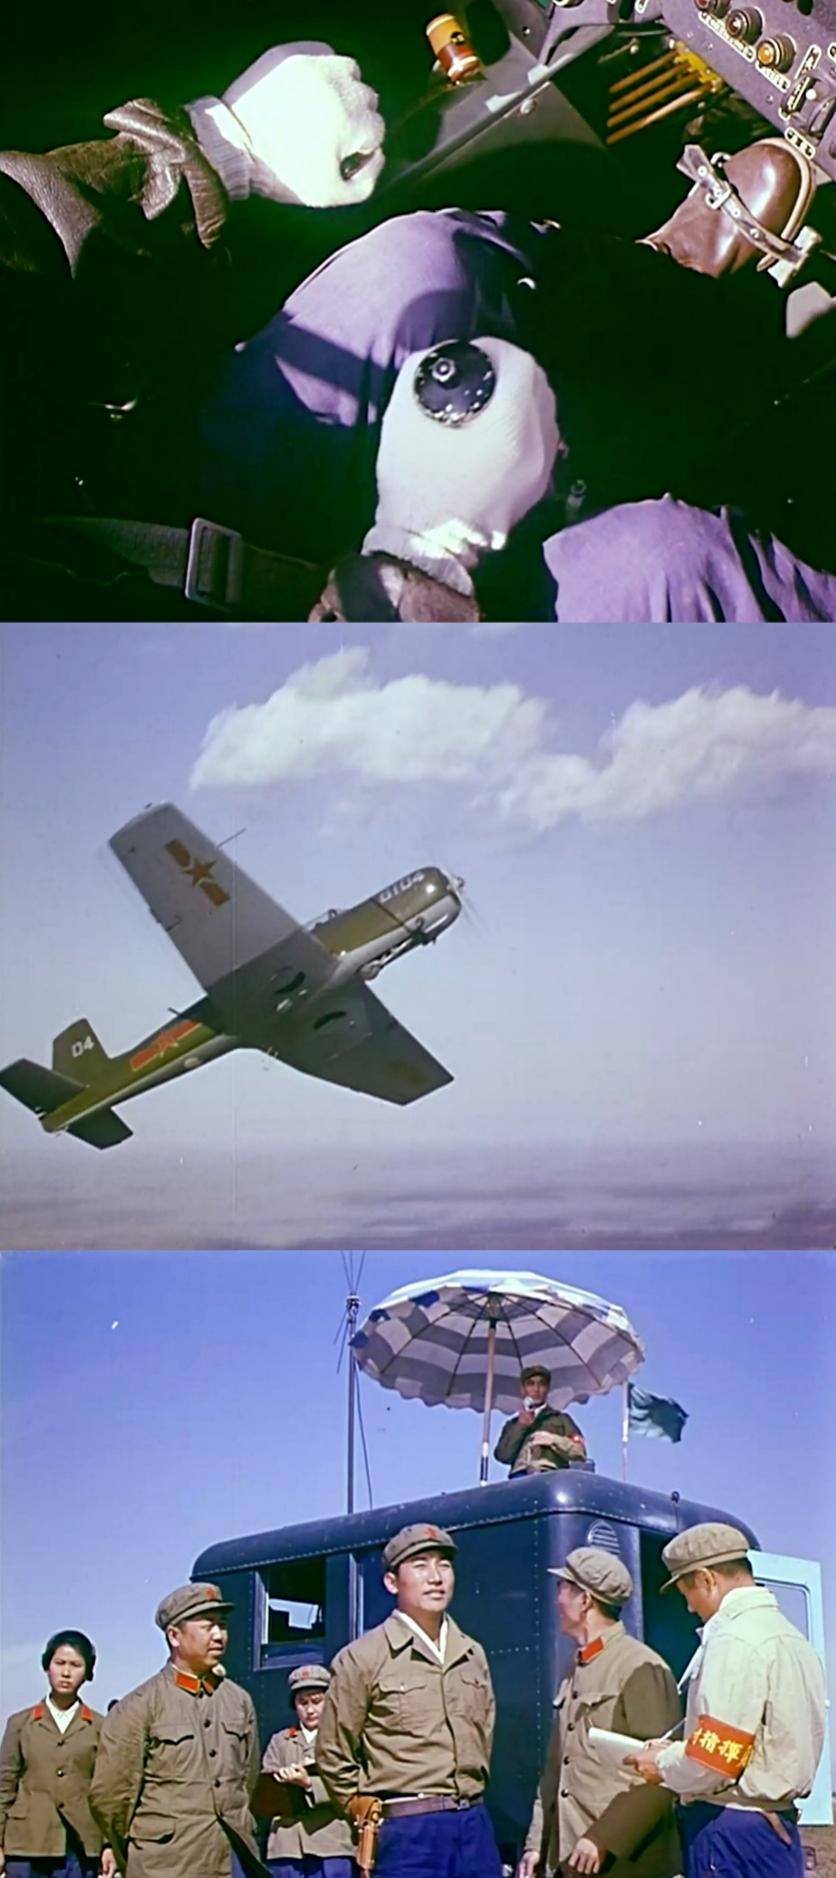 《论剑》电影,电影专题月活动,老电影中的空军飞行员培养